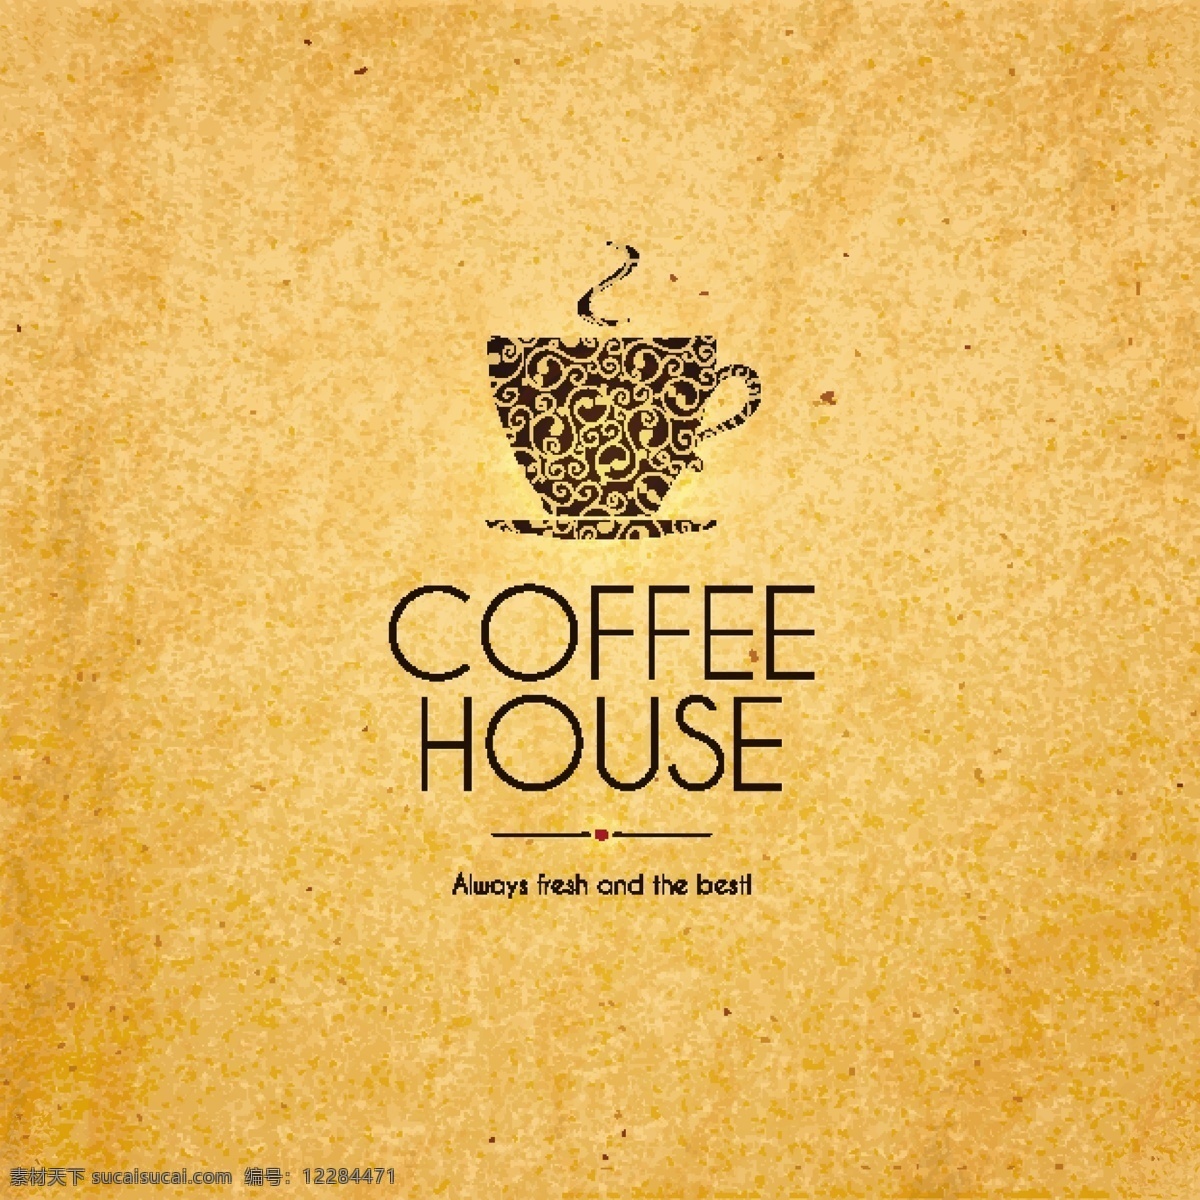 咖啡 图标 咖啡设计 咖啡图标 咖啡标志 咖啡店 咖啡元素 咖啡店图标 logo 咖啡商标 标志 vi icon 小图标 图标设计 logo设计 标志设计 标识设计 矢量设计 餐饮类图标 标识标志图标 矢量